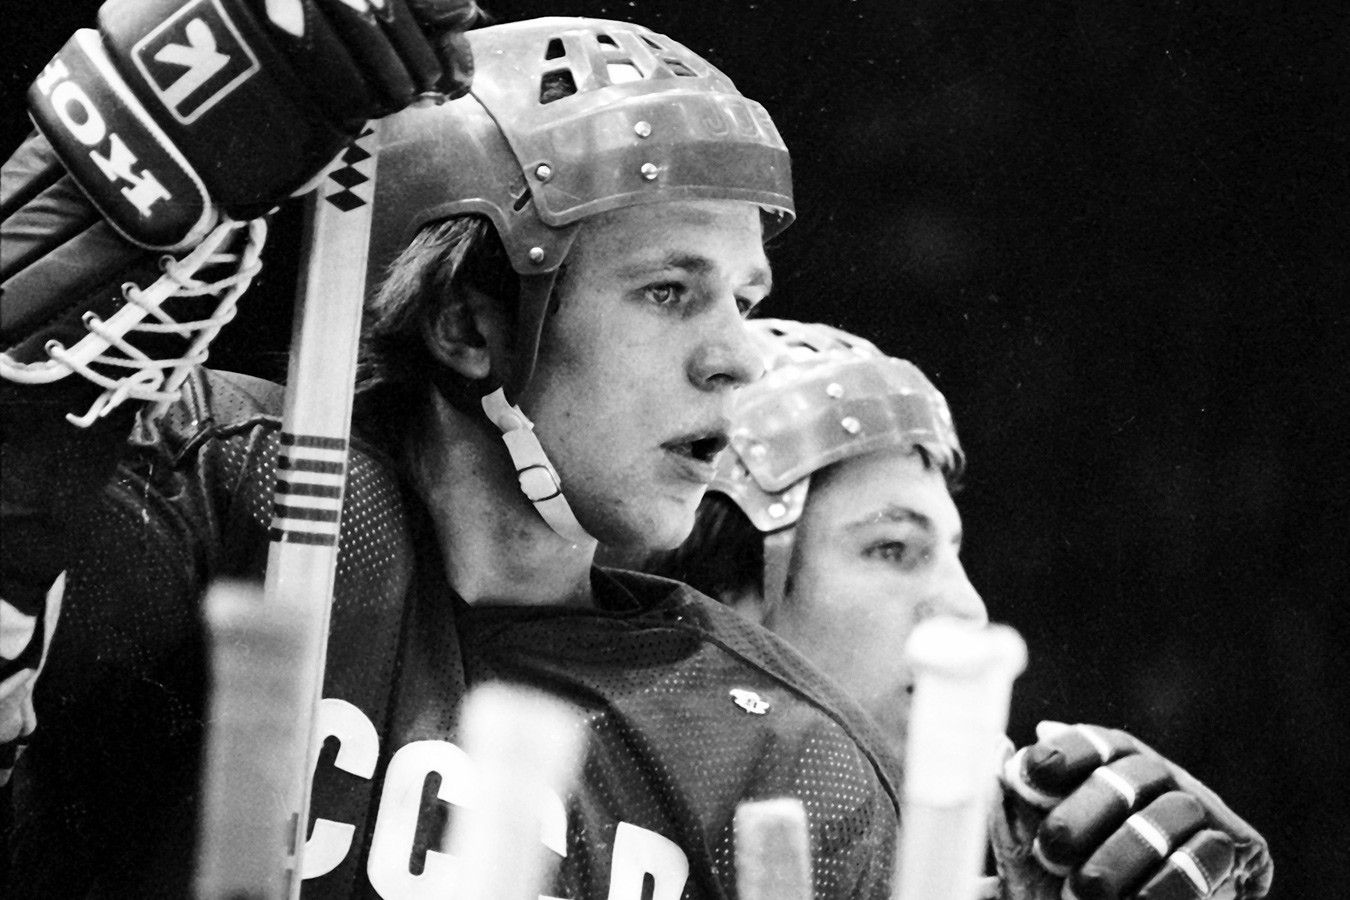 Лоссовик: советские хоккеисты пили безбожно, как сапожники. Никто рядом с ними не стоял